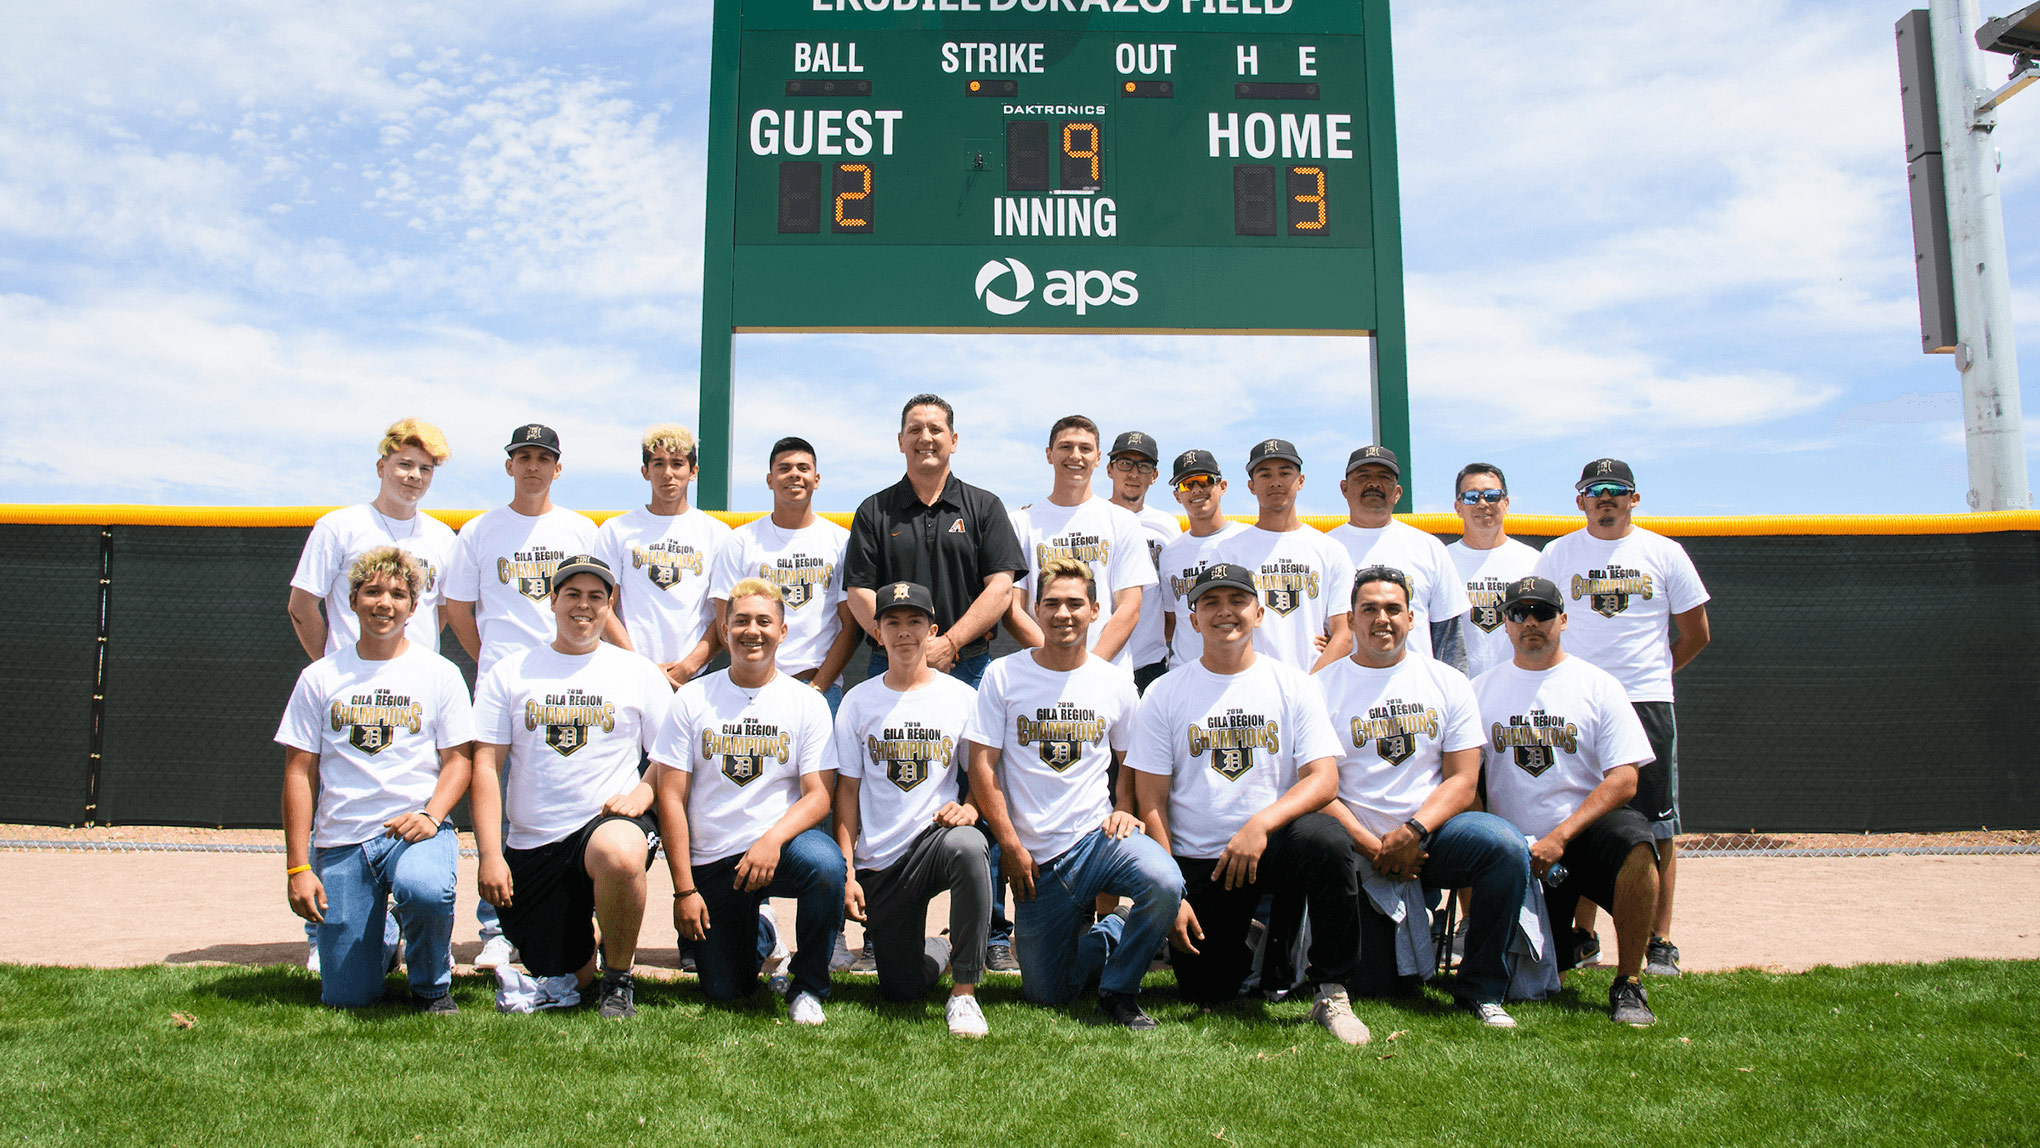 Baseball team portrait in front of the scoreboard.